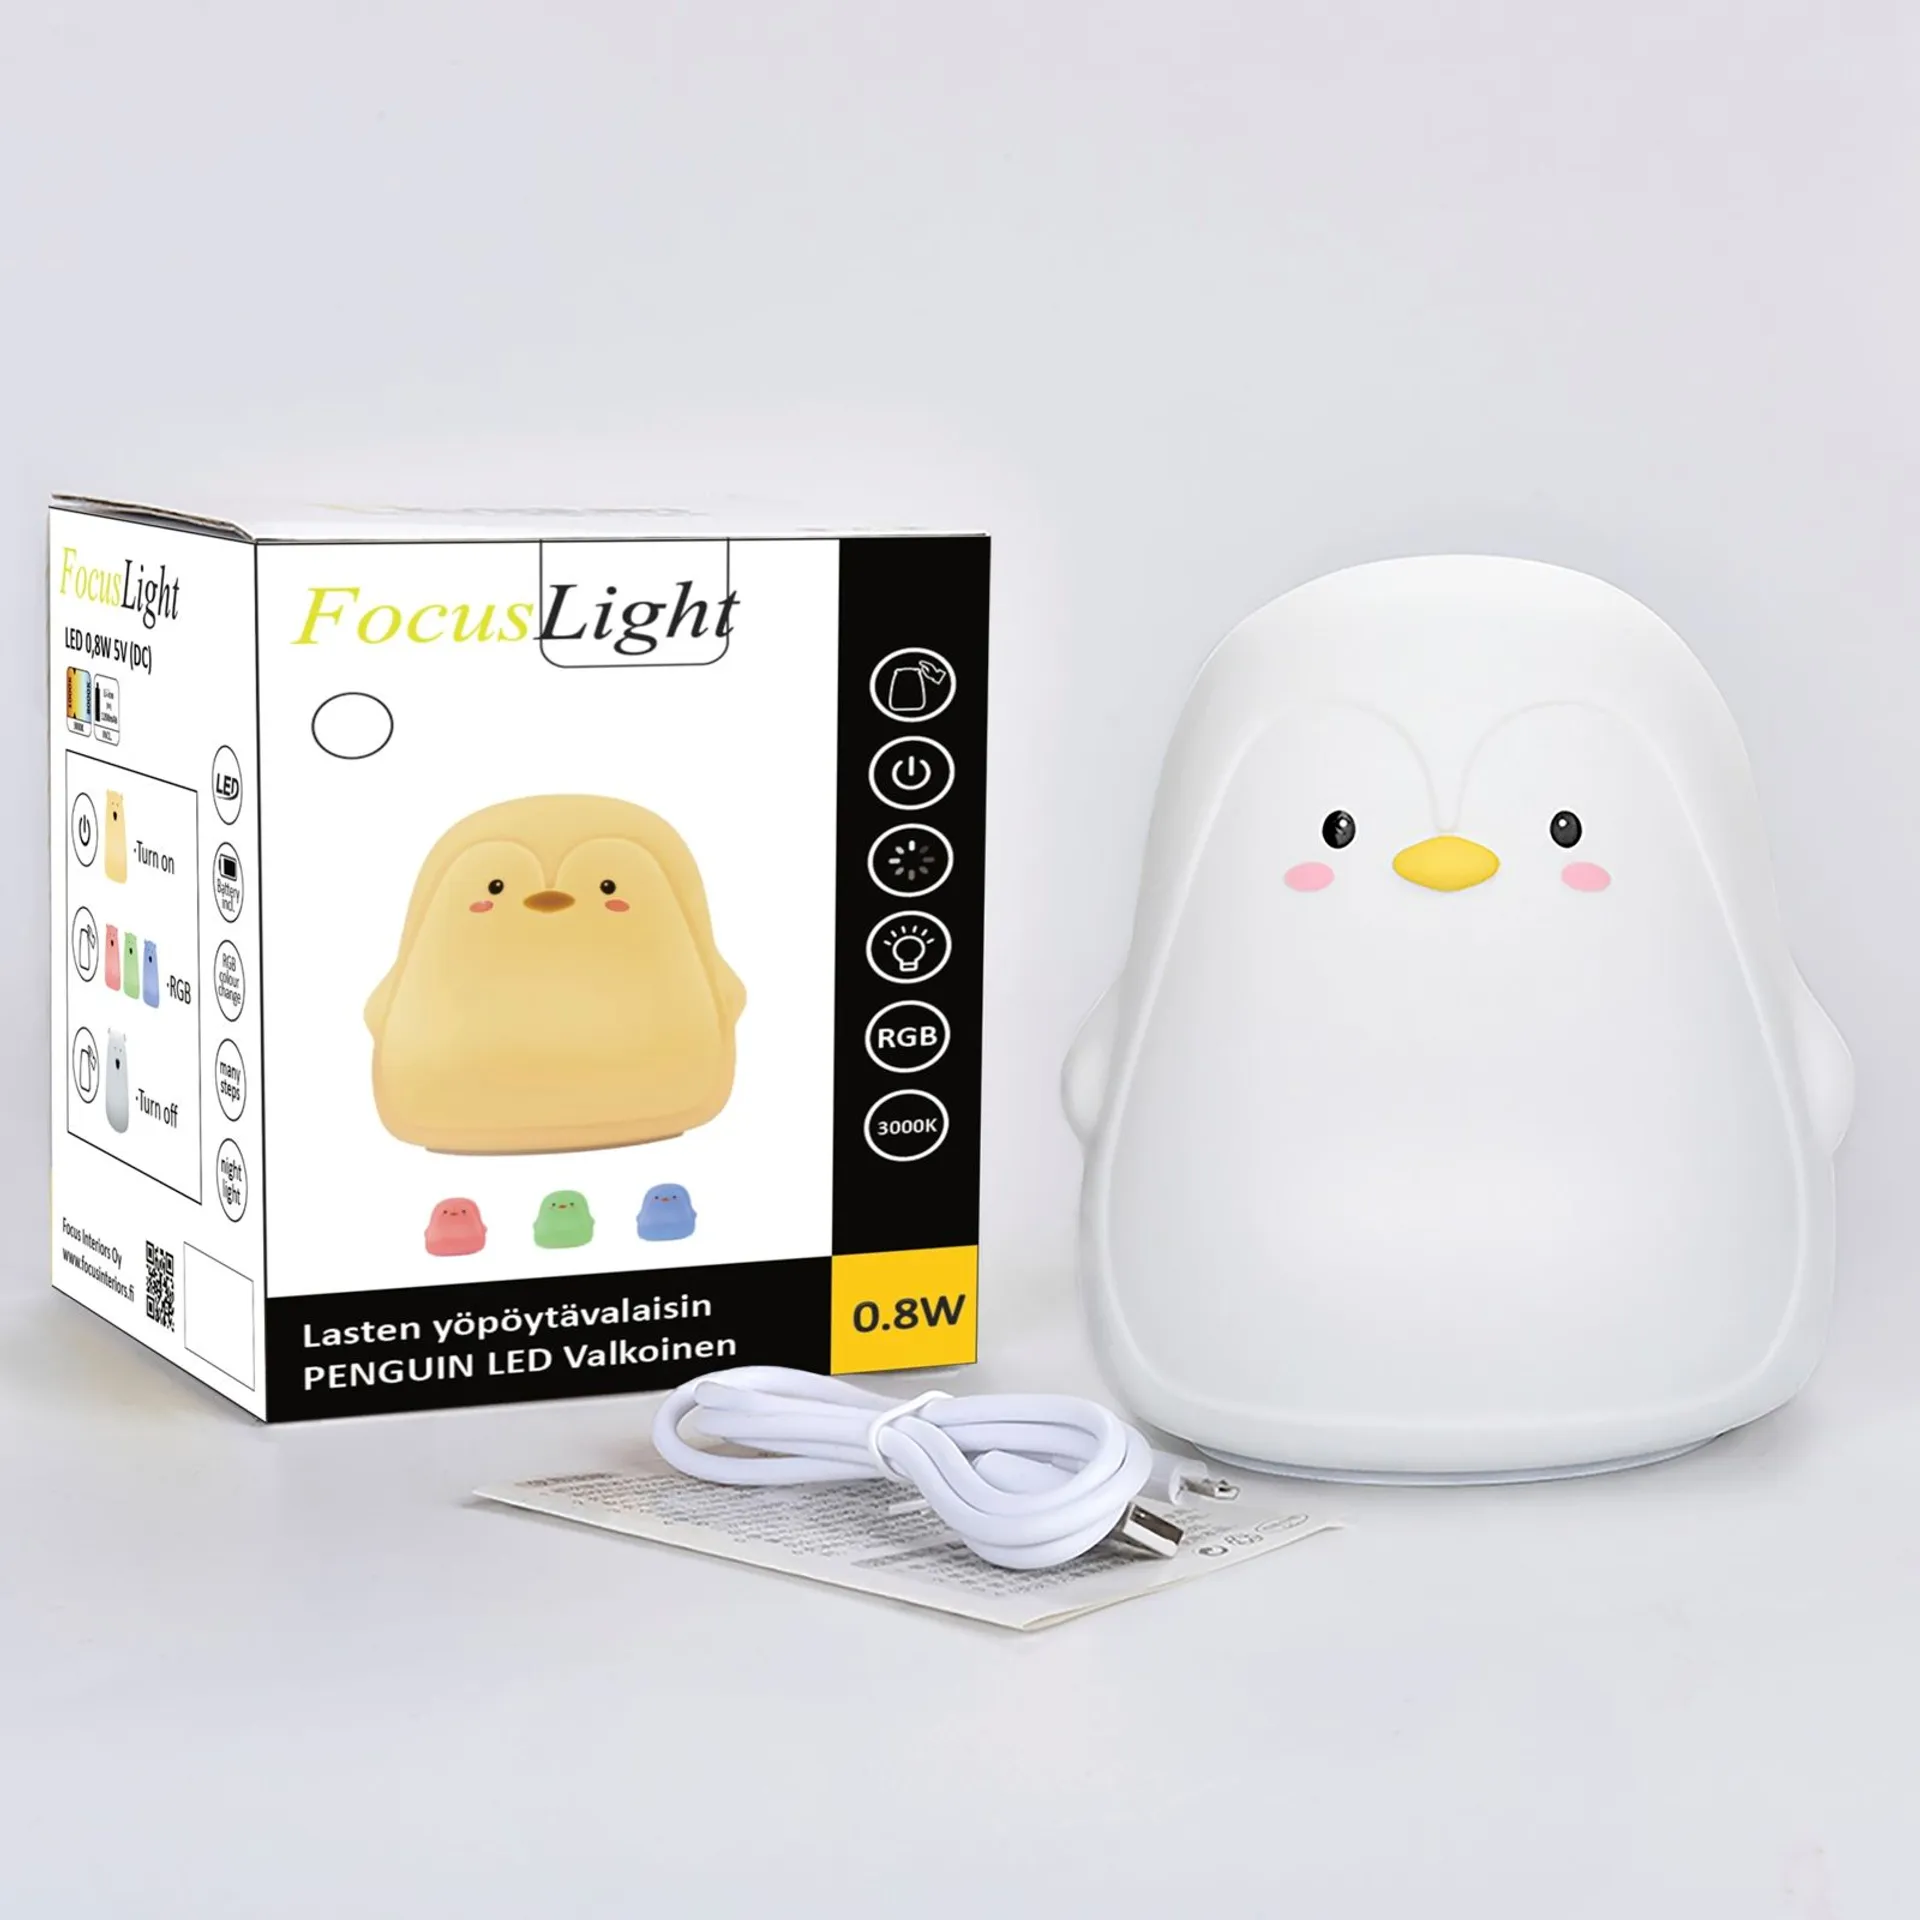 FocusLight lasten yöpöytävalaisin Penguin LED - 3